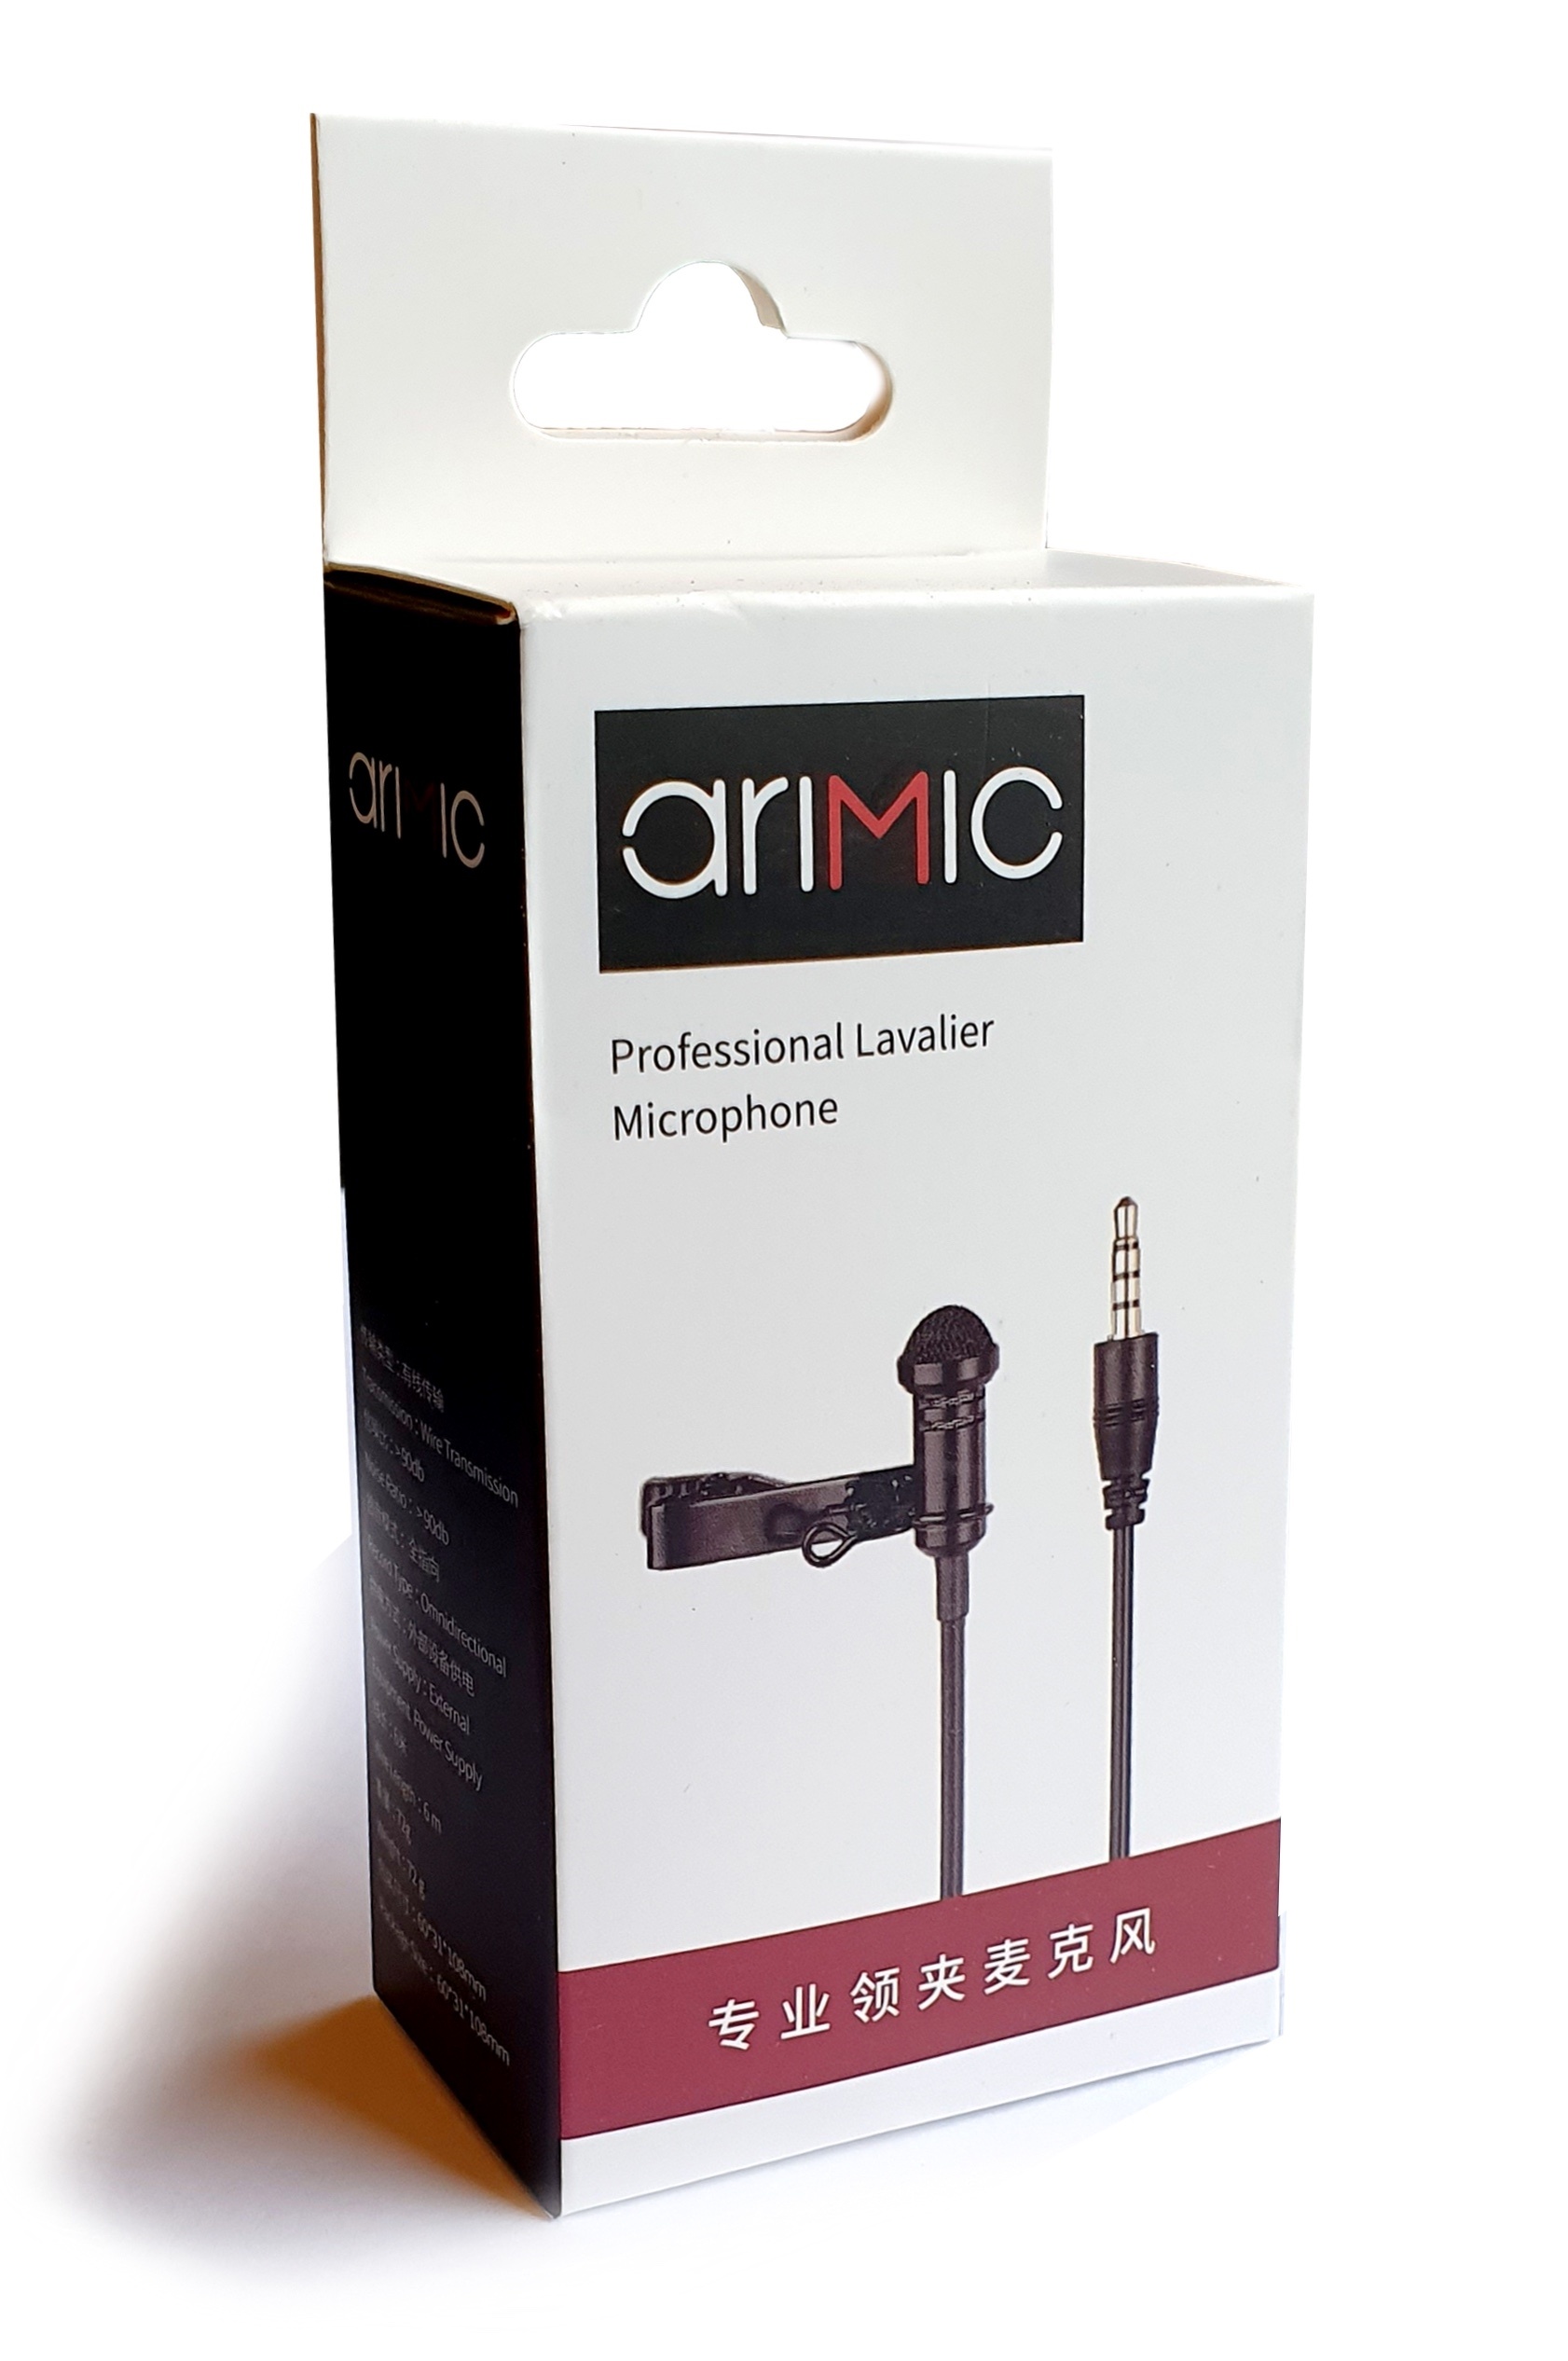 Ulanzi Arimic Professional Lavalier Microphone Kit